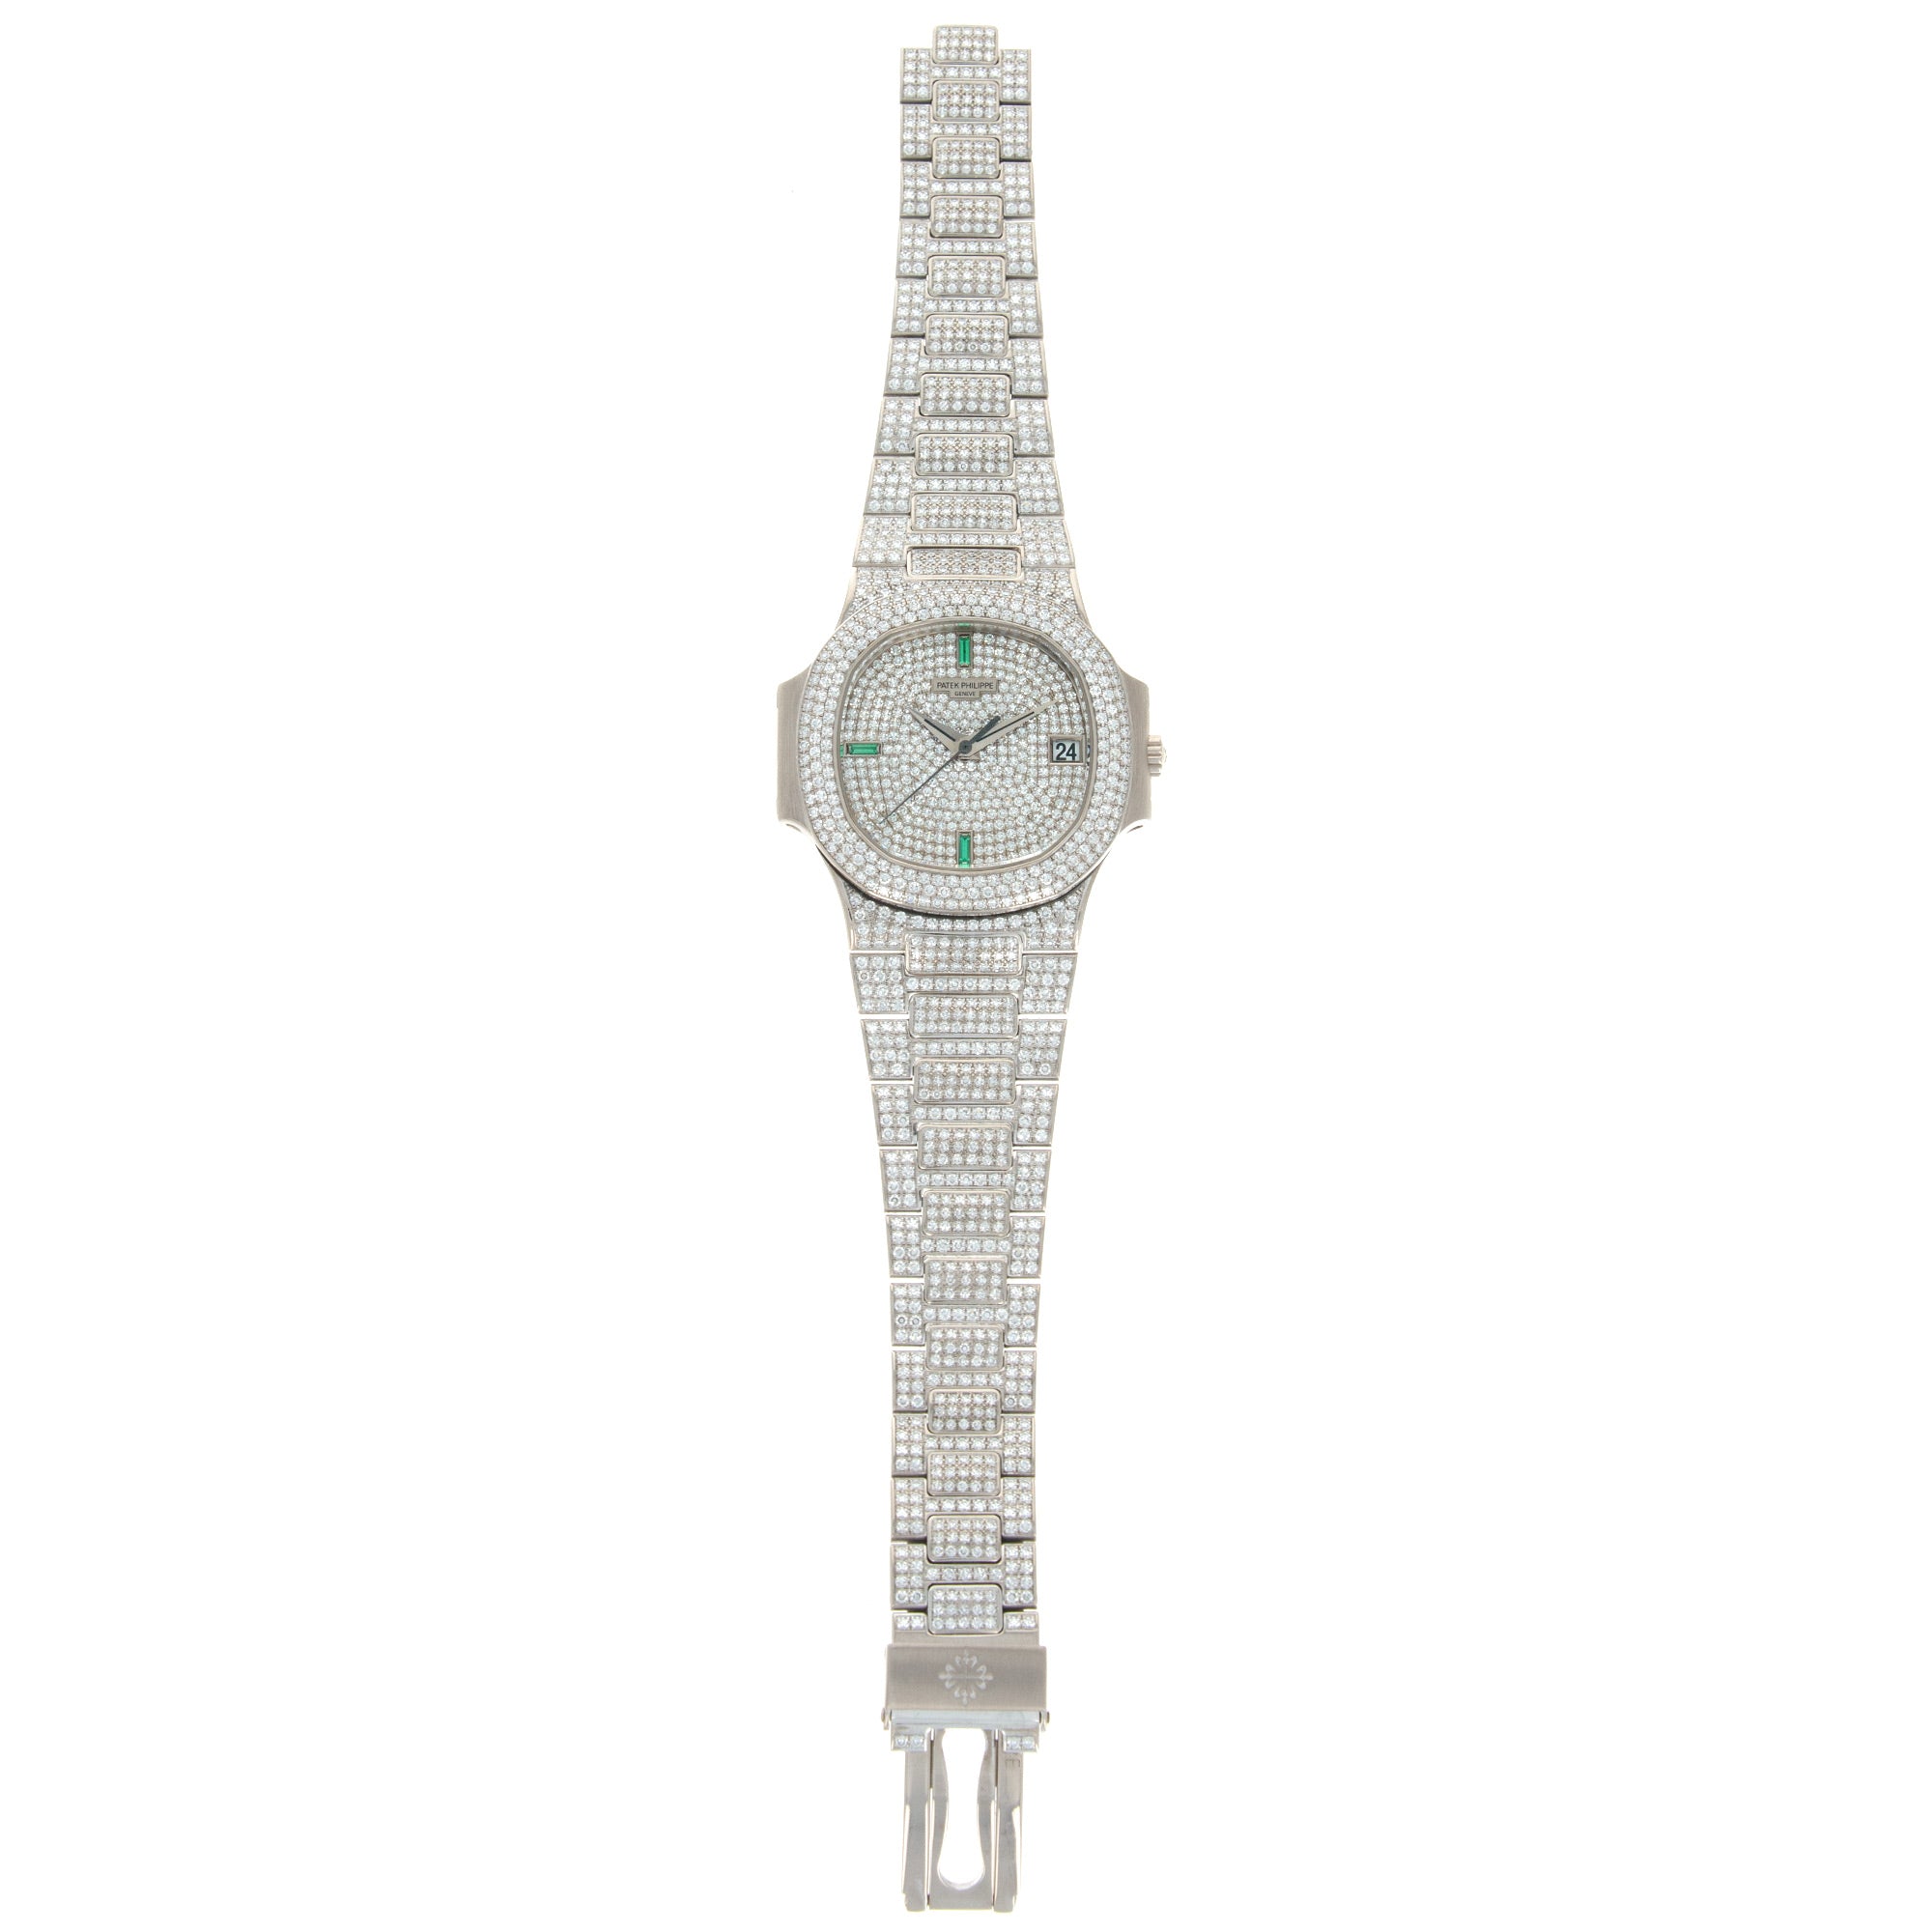 Patek Philippe - Patek Philippe White Gold Nautilus Diamond Emerald Watch Ref. 3800 - The Keystone Watches